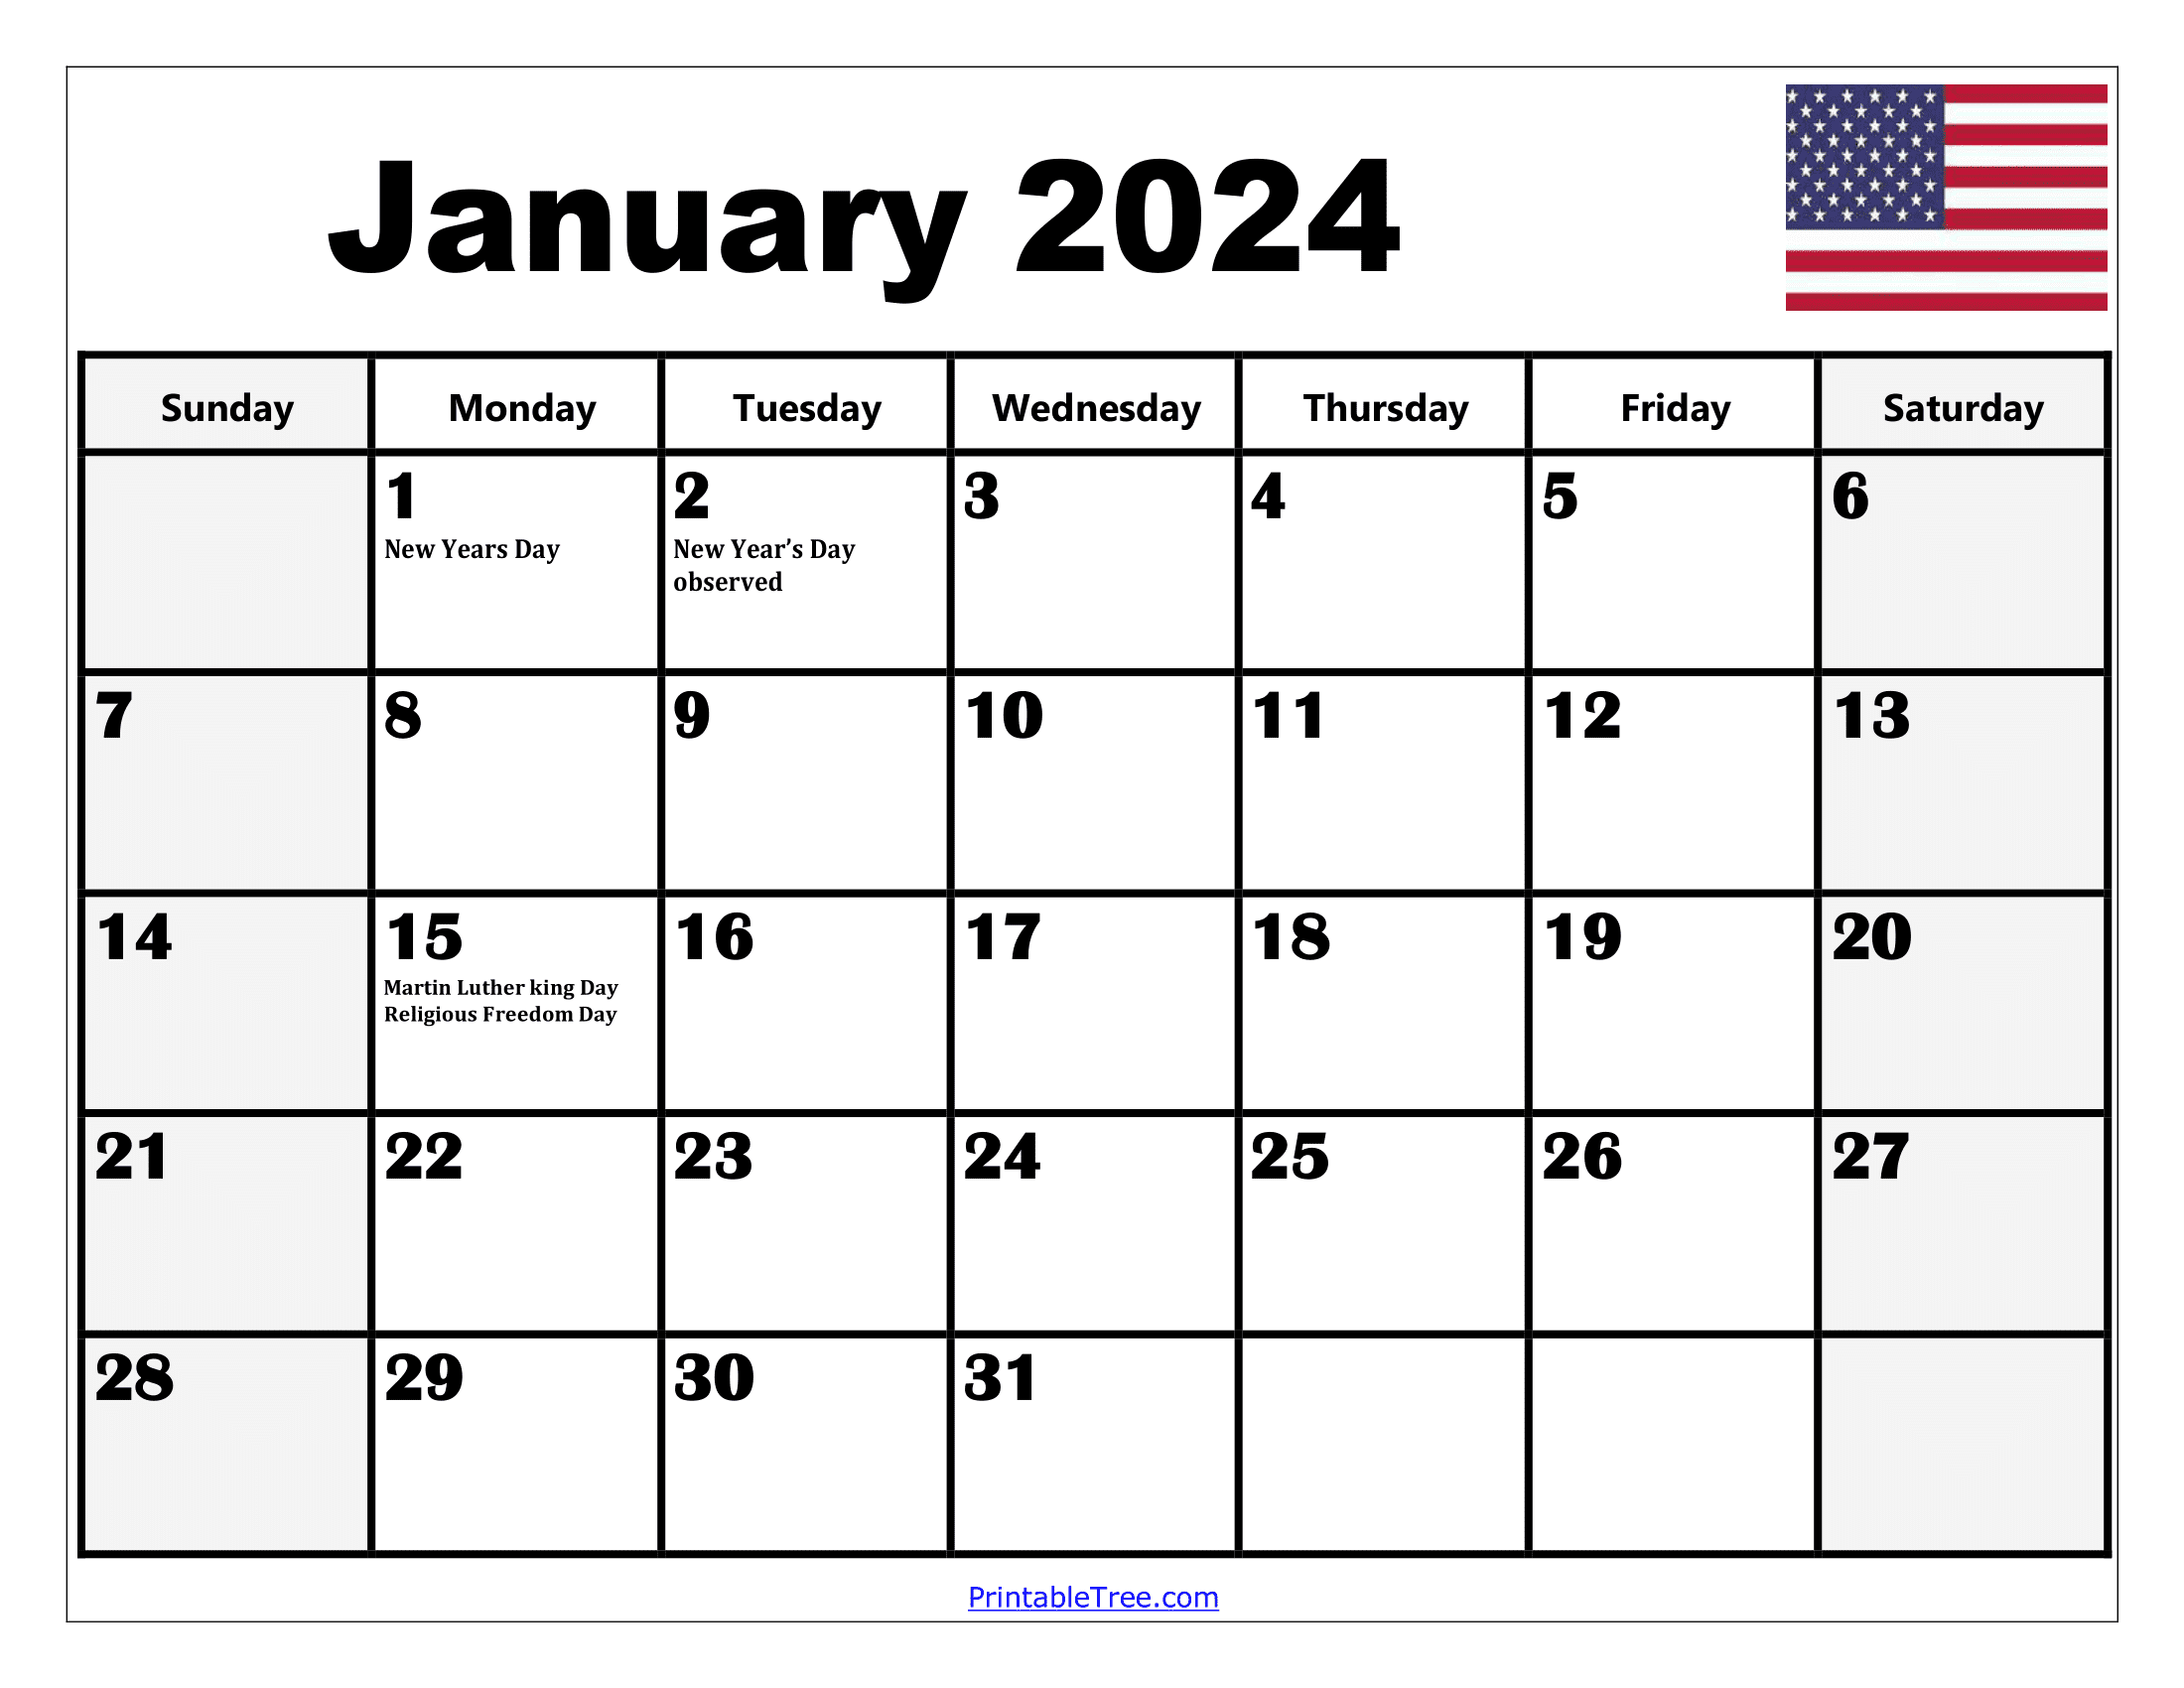 2024 Holiday Calendar Days Free Download Nov 2024 Calendar - Free Printable 2024 Calendar Vector With Holidays